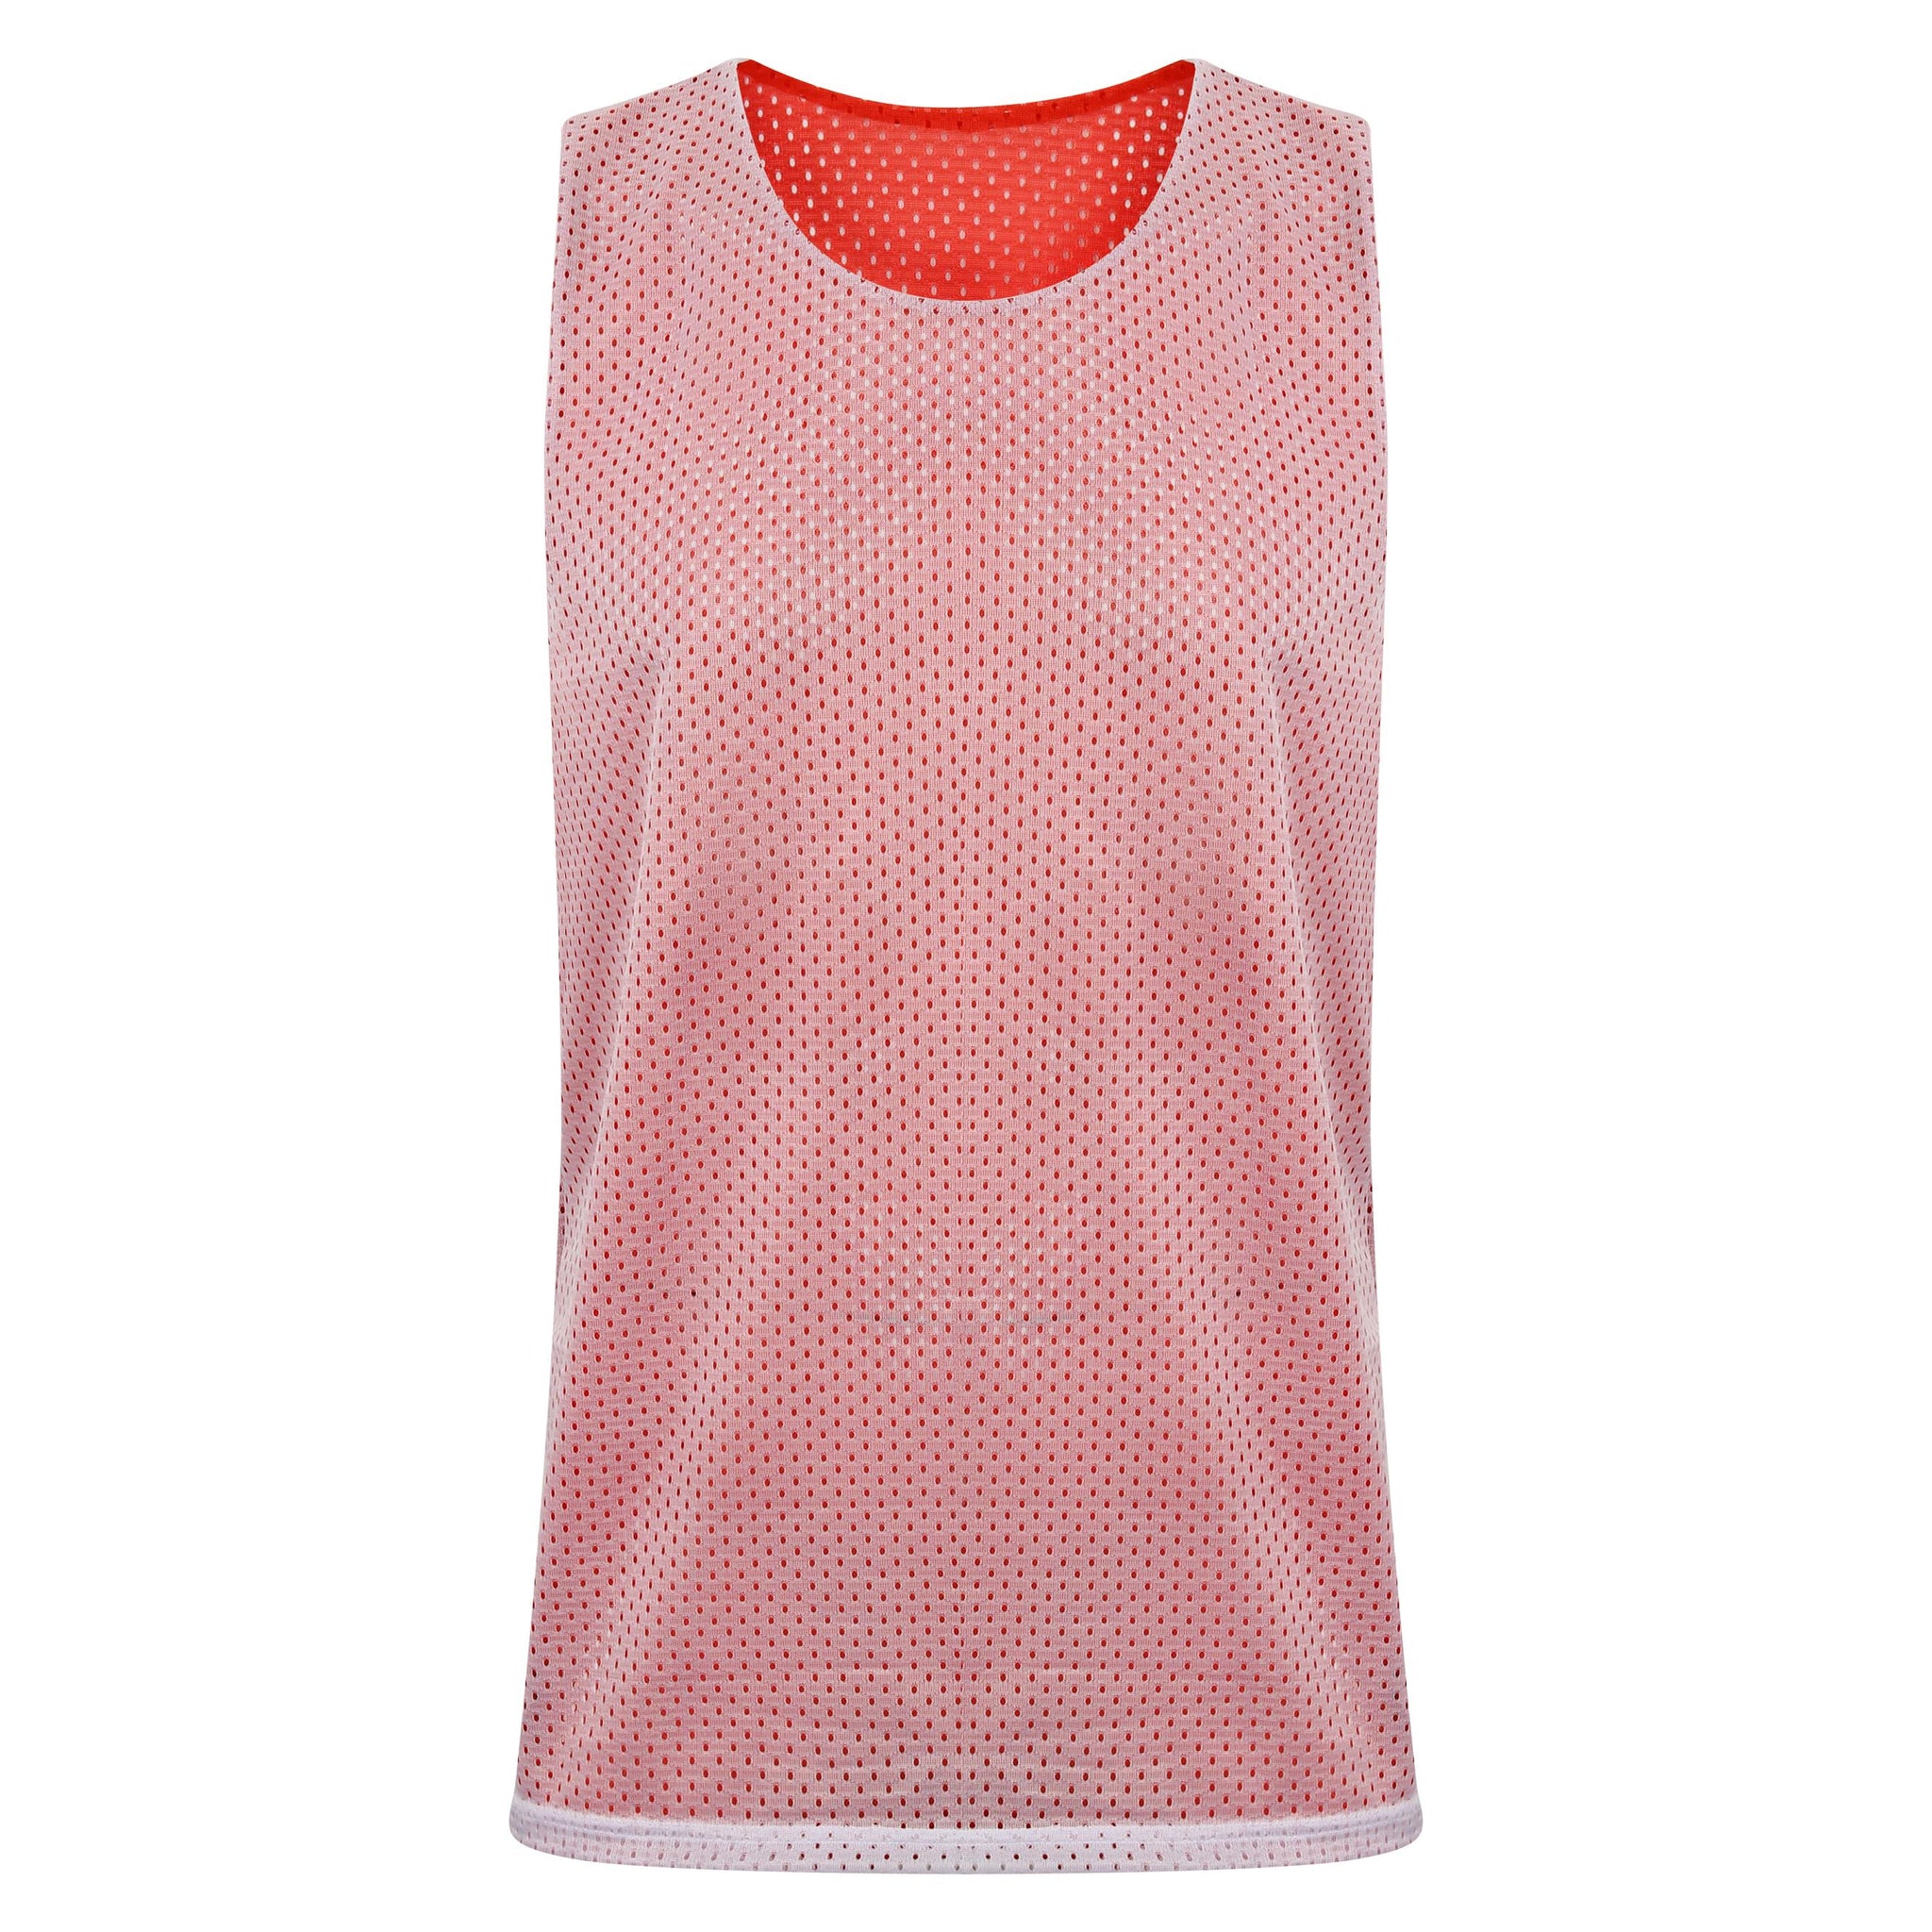 STARTING 5 Manhattan Lightweight Reversible Basketball Training Vest Red/White